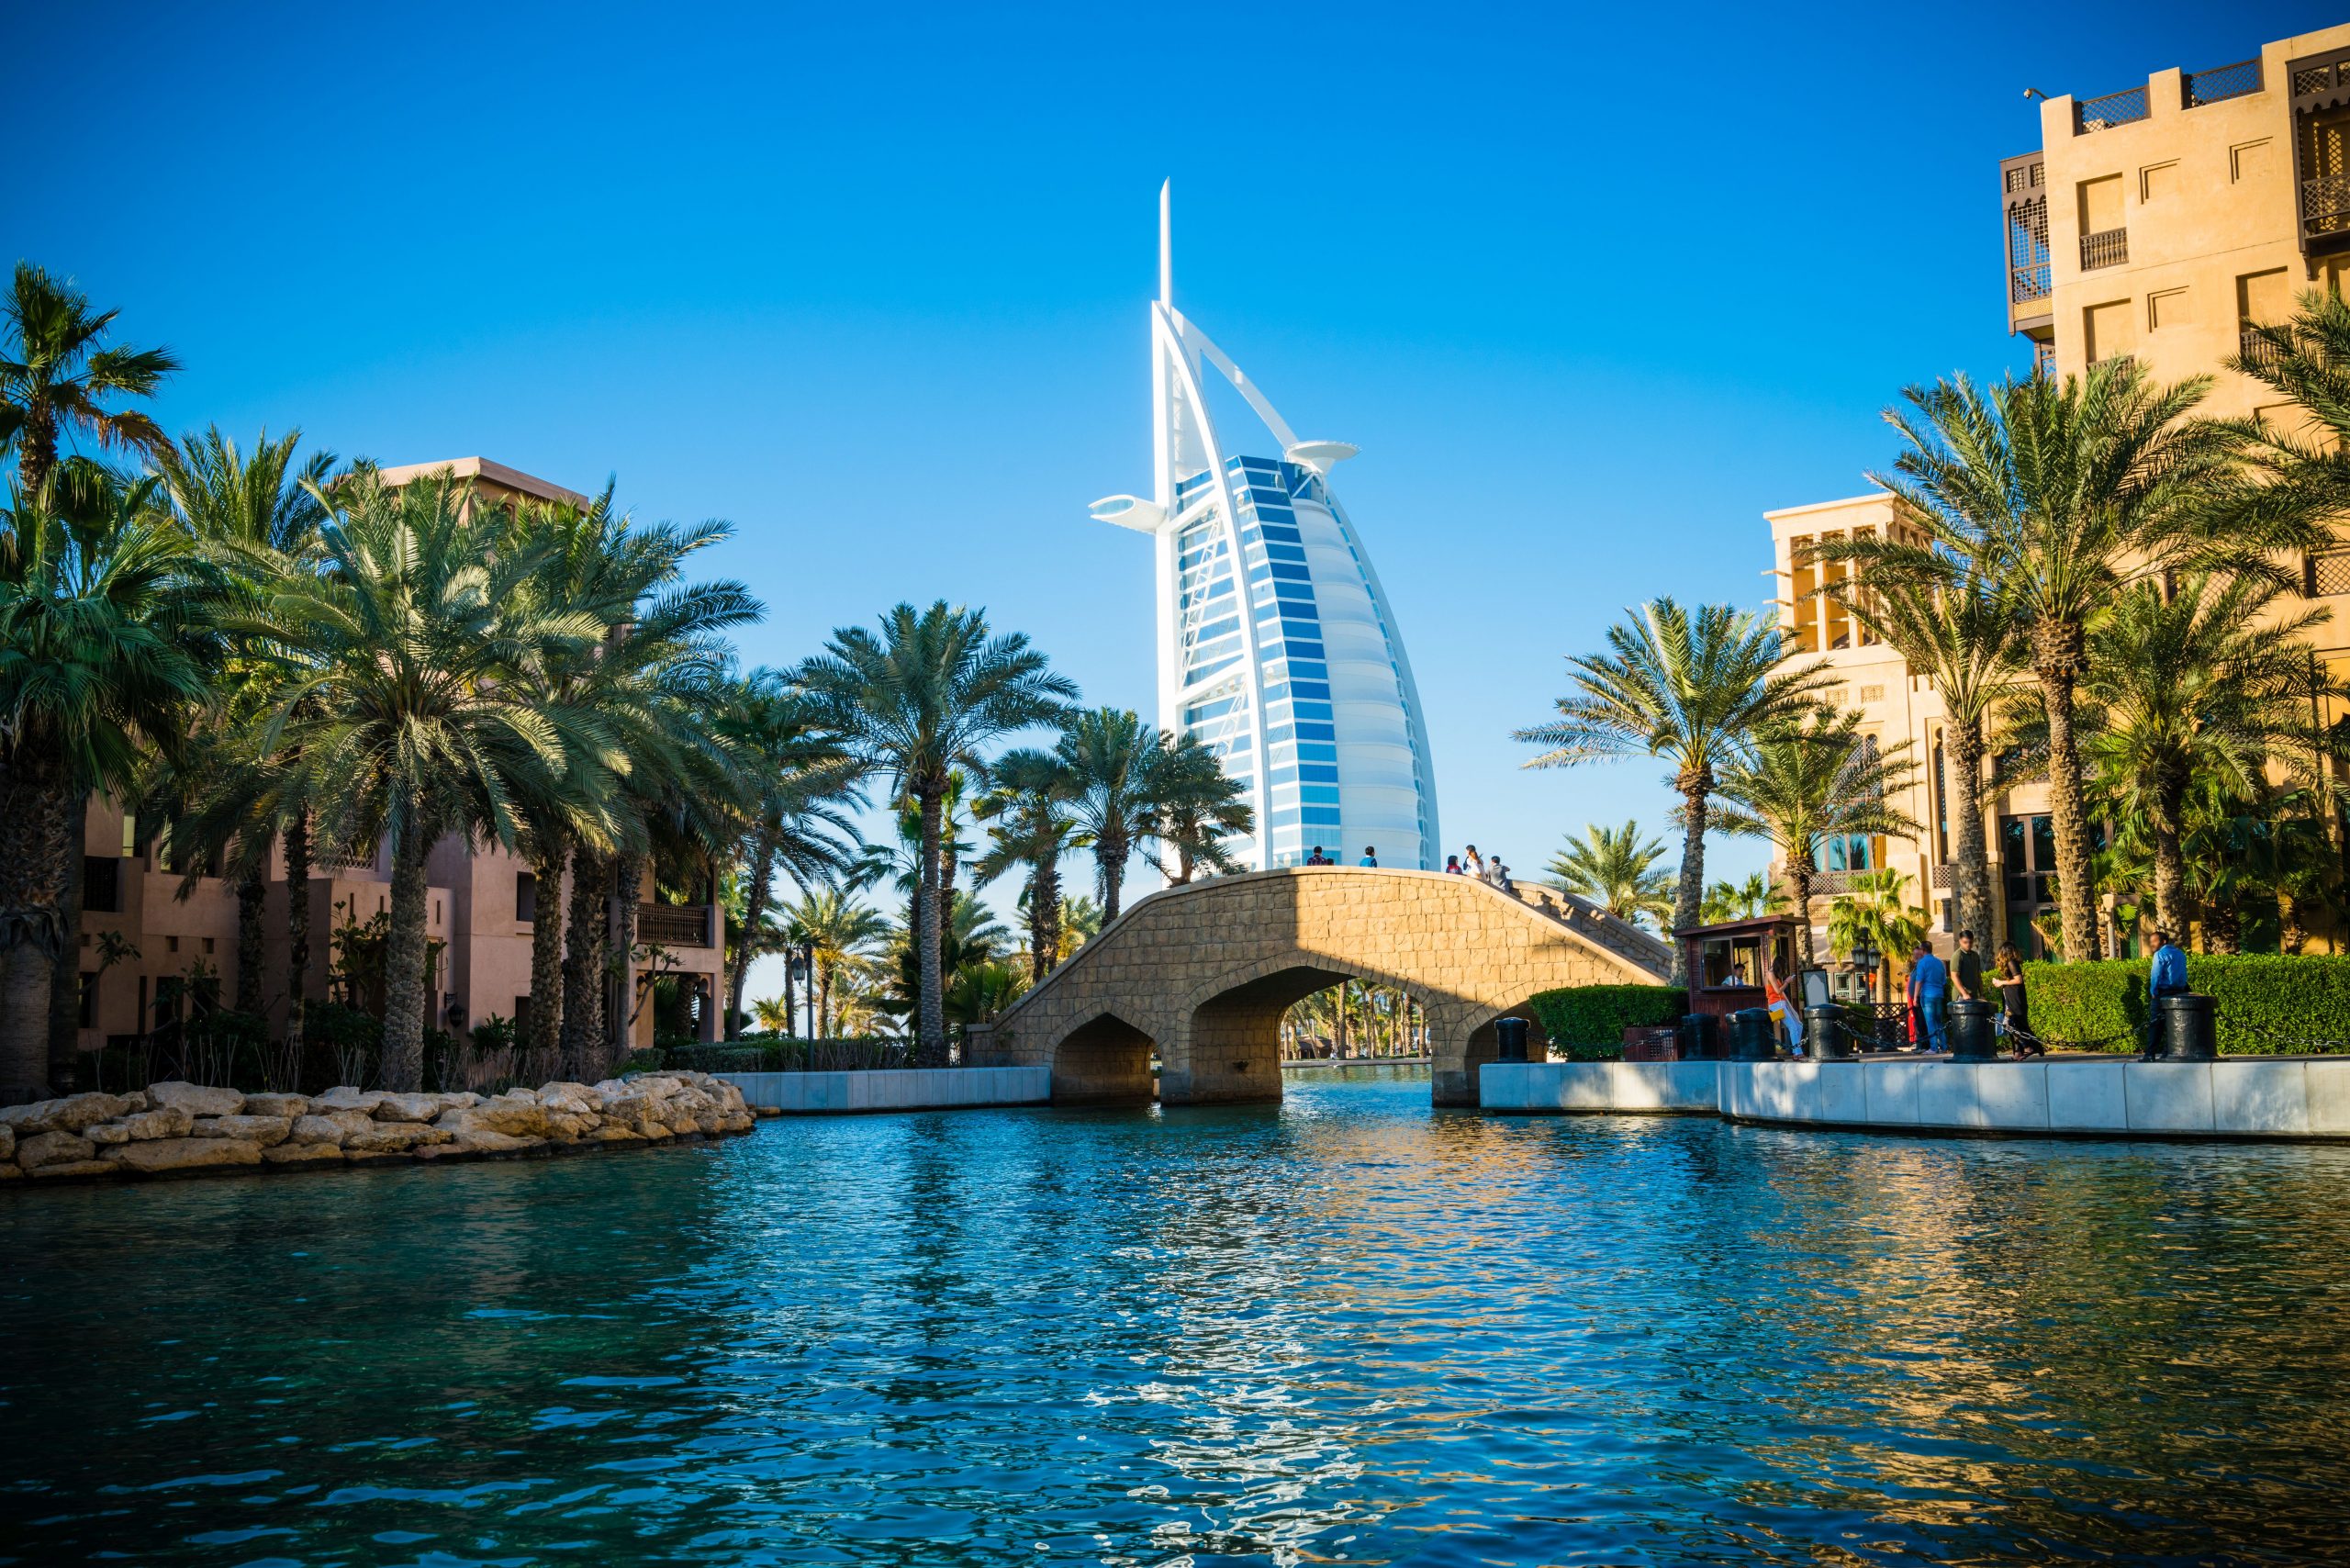 Dubaj in Abu Dhabi